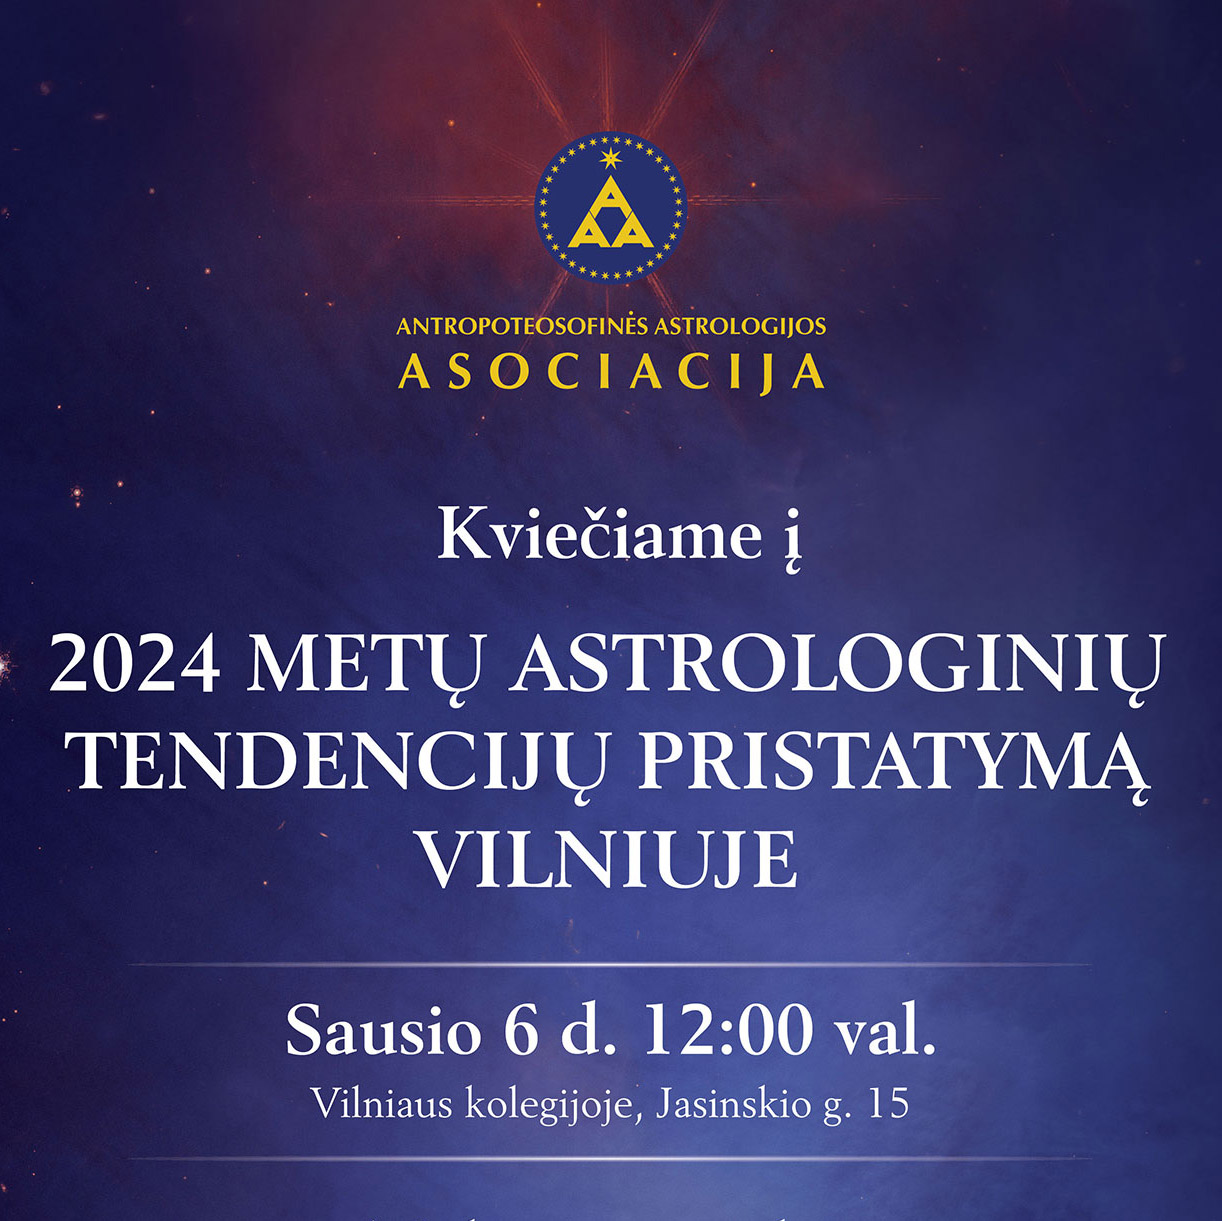 Kviečiame į 2024 m. astrologinių tendencijų pristatymą Vilniuje